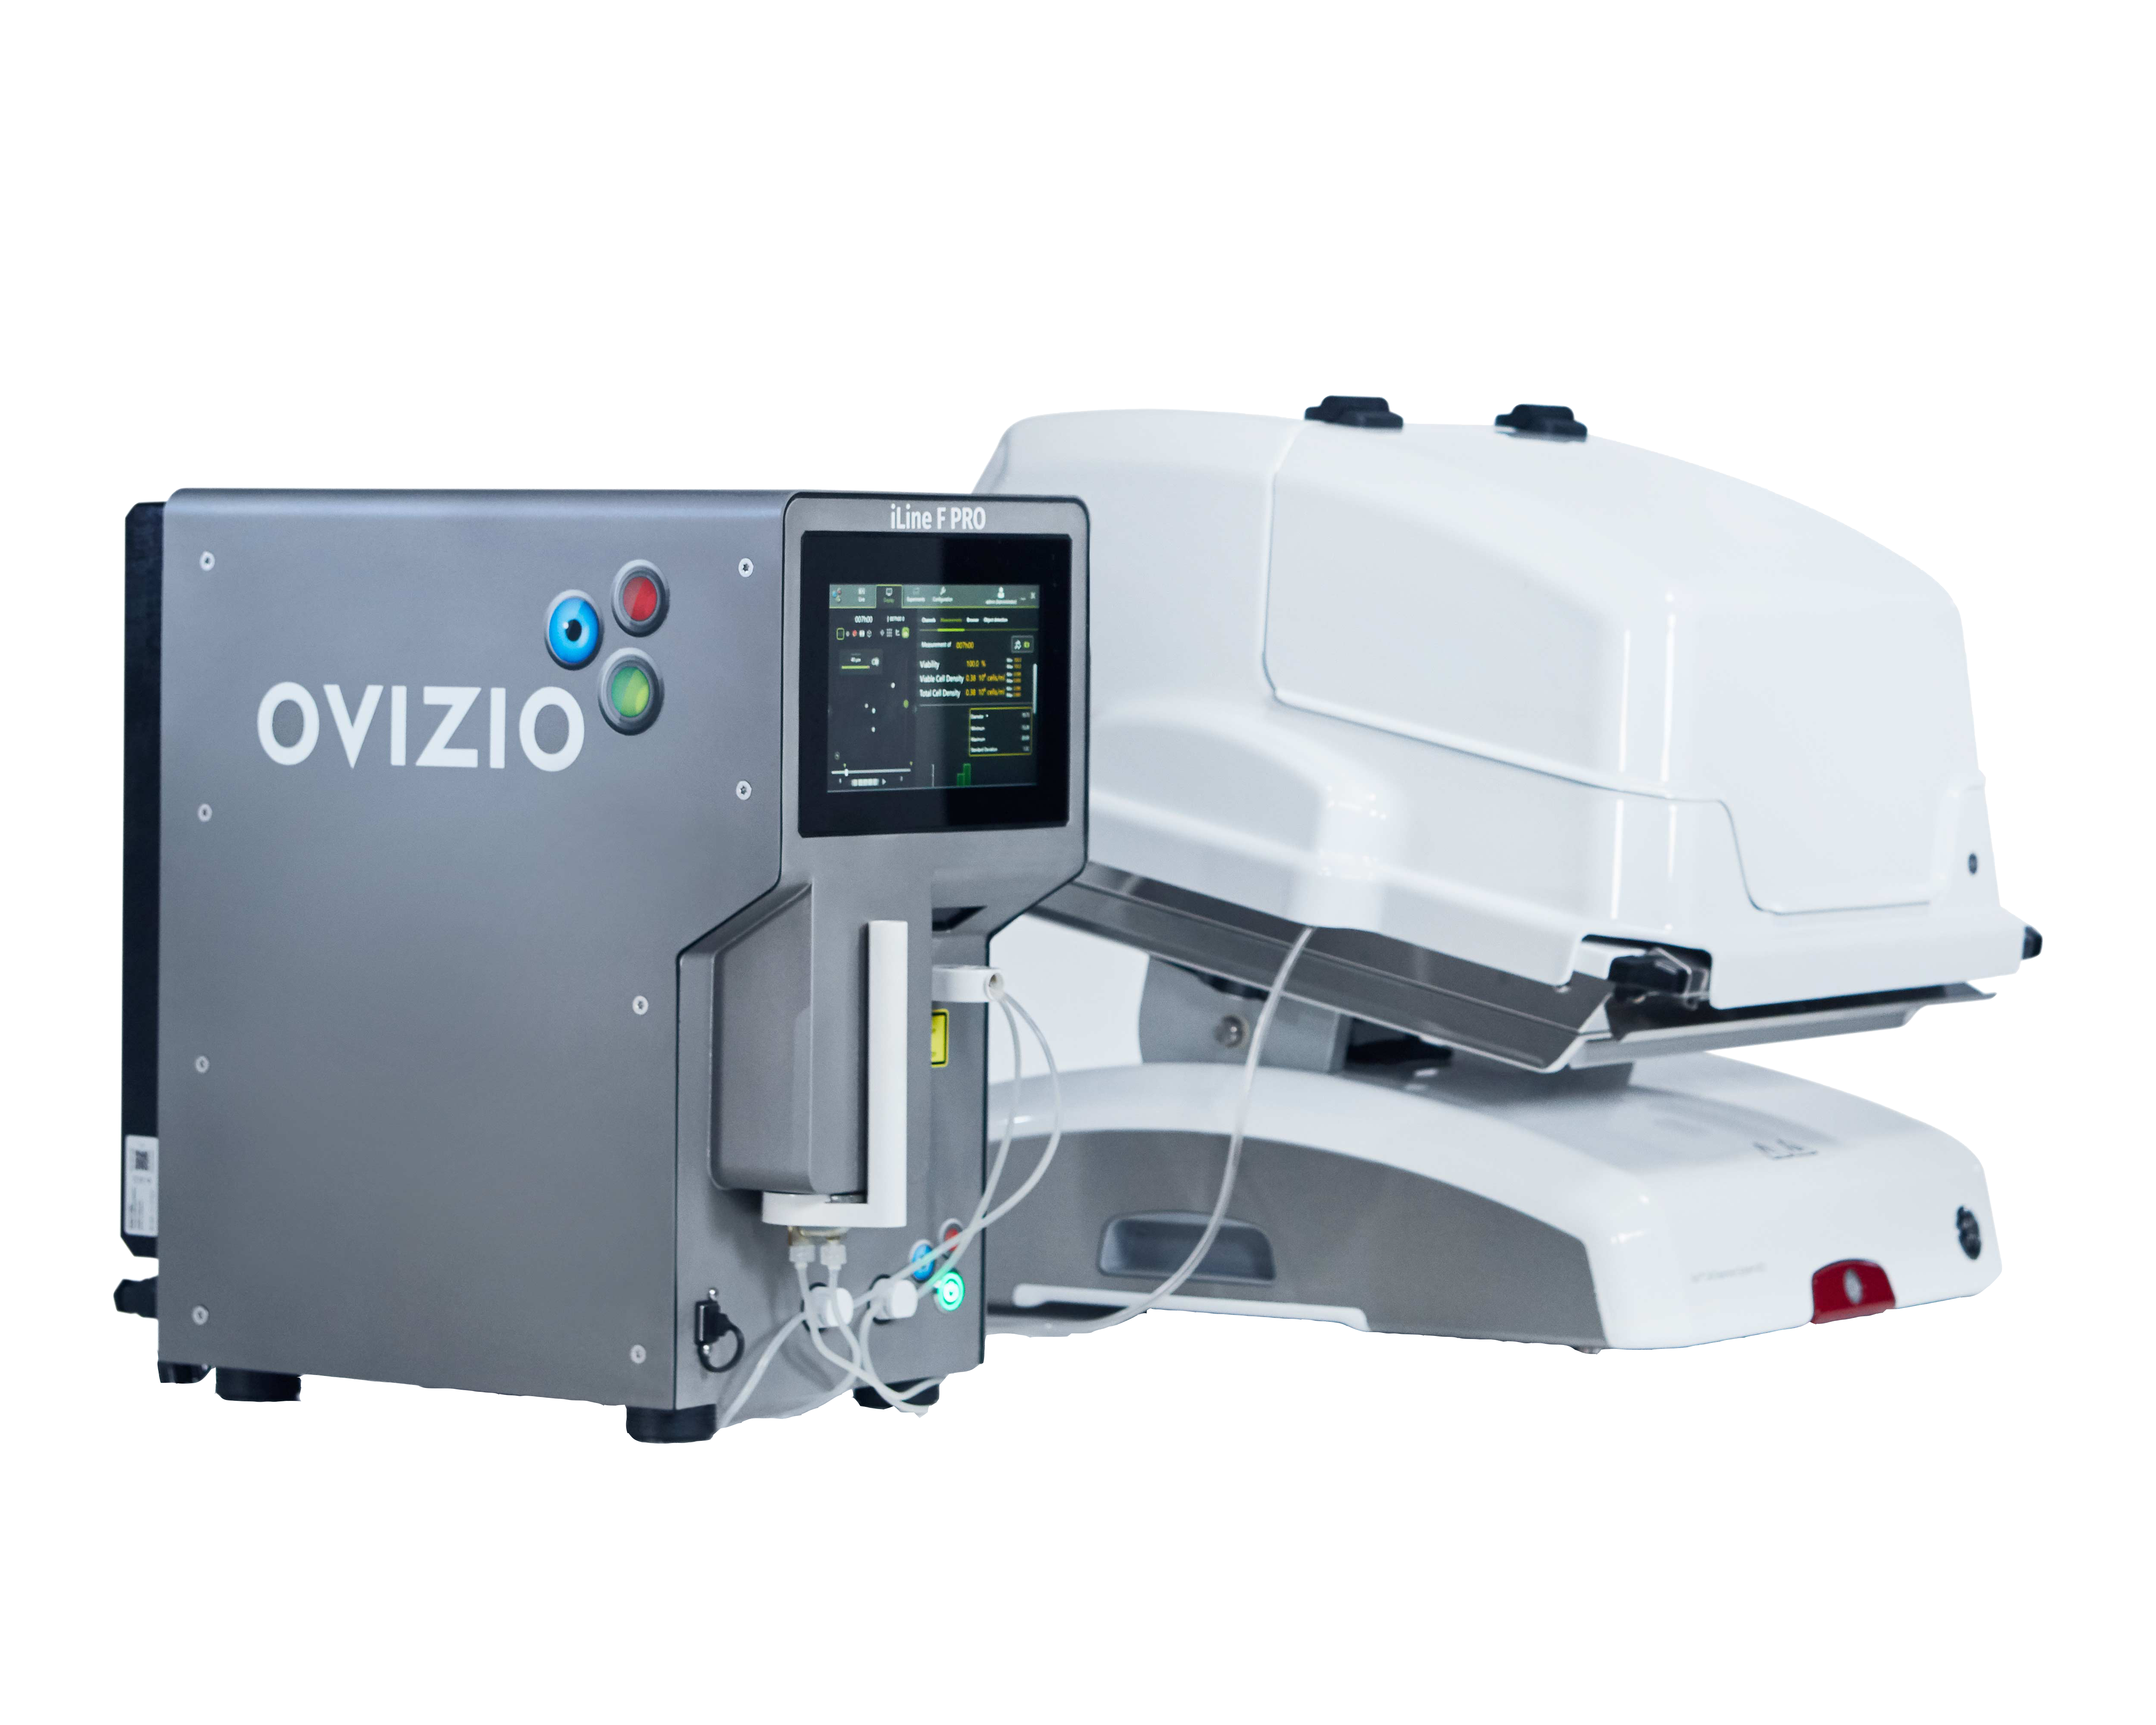 iLinePro Ovizio - optical system designed and produced by Lambda-X